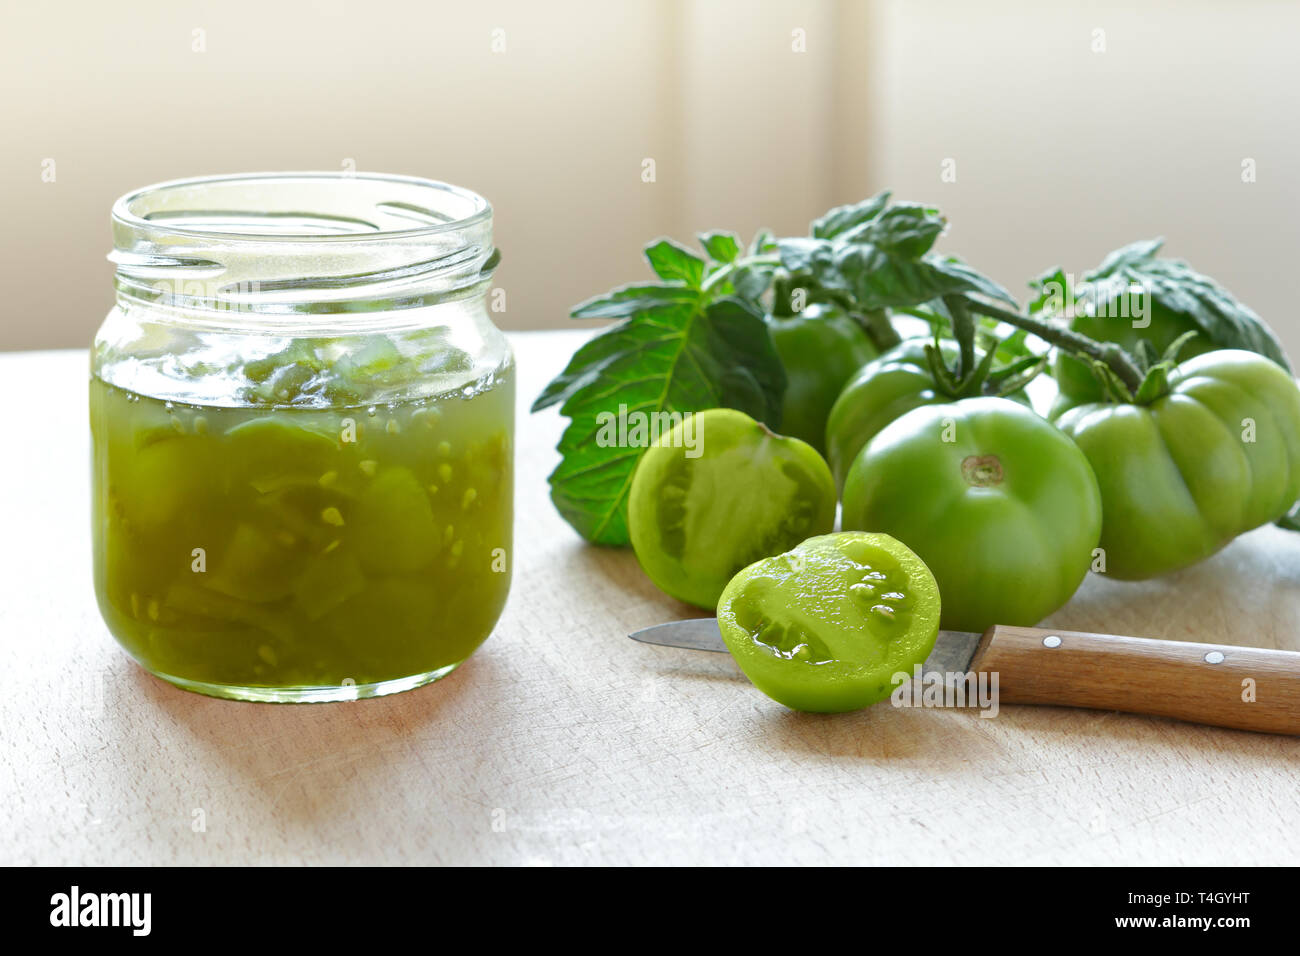 Papierstau oder chutney in einem Glas aus grünen Tomaten, Home Canning Konzept Stockfoto